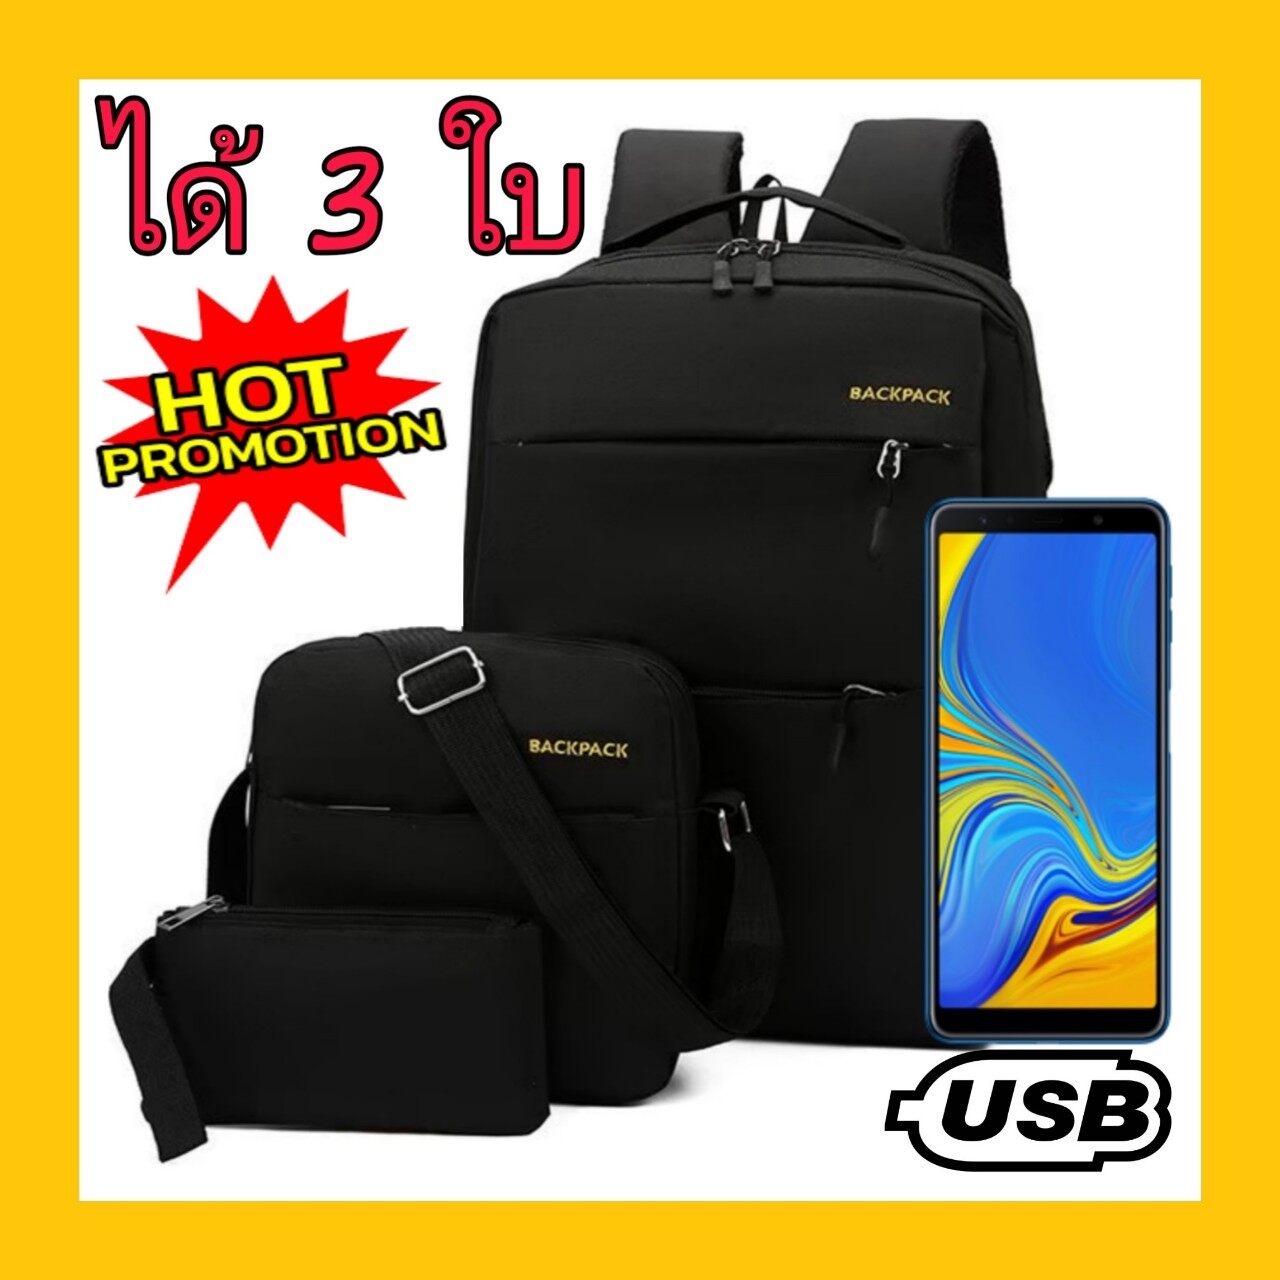 [จัดส่งใน 24 ชม.] OdeeShop Backpack พร้อม USB Port and USB Cable กระเป๋าเป้สะพายหลัง ใส่โน๊ตบุ๊คได้ กระเป๋าแฟชั่น ใช้ได้ทั้งผู้ชายและผู้หญิง 4 สี 4 สไตล์ (OD209)